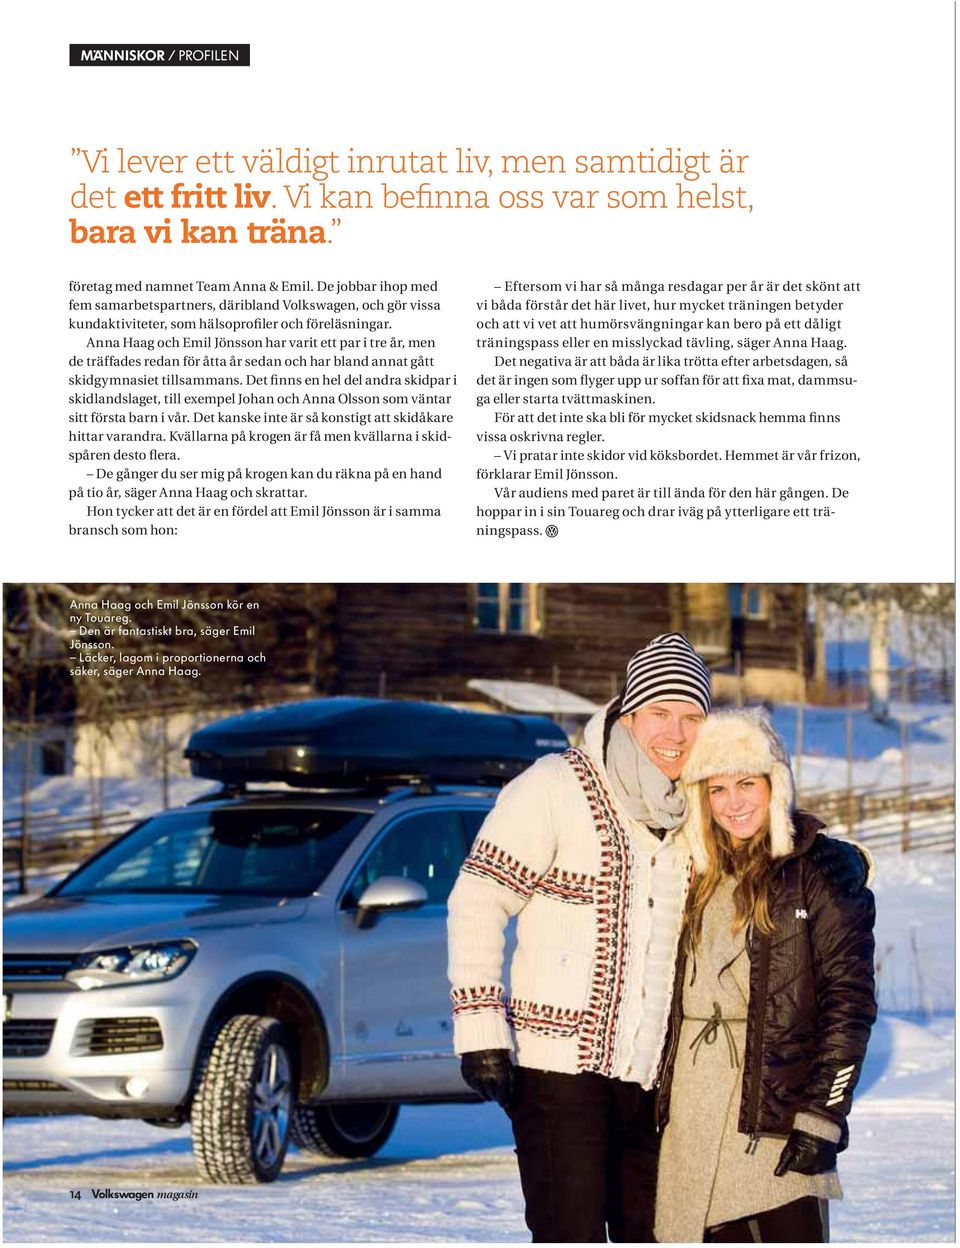 Anna Haag och Emil Jönsson har varit ett par i tre år, men de träffades redan för åtta år sedan och har bland annat gått skidgymnasiet tillsammans.